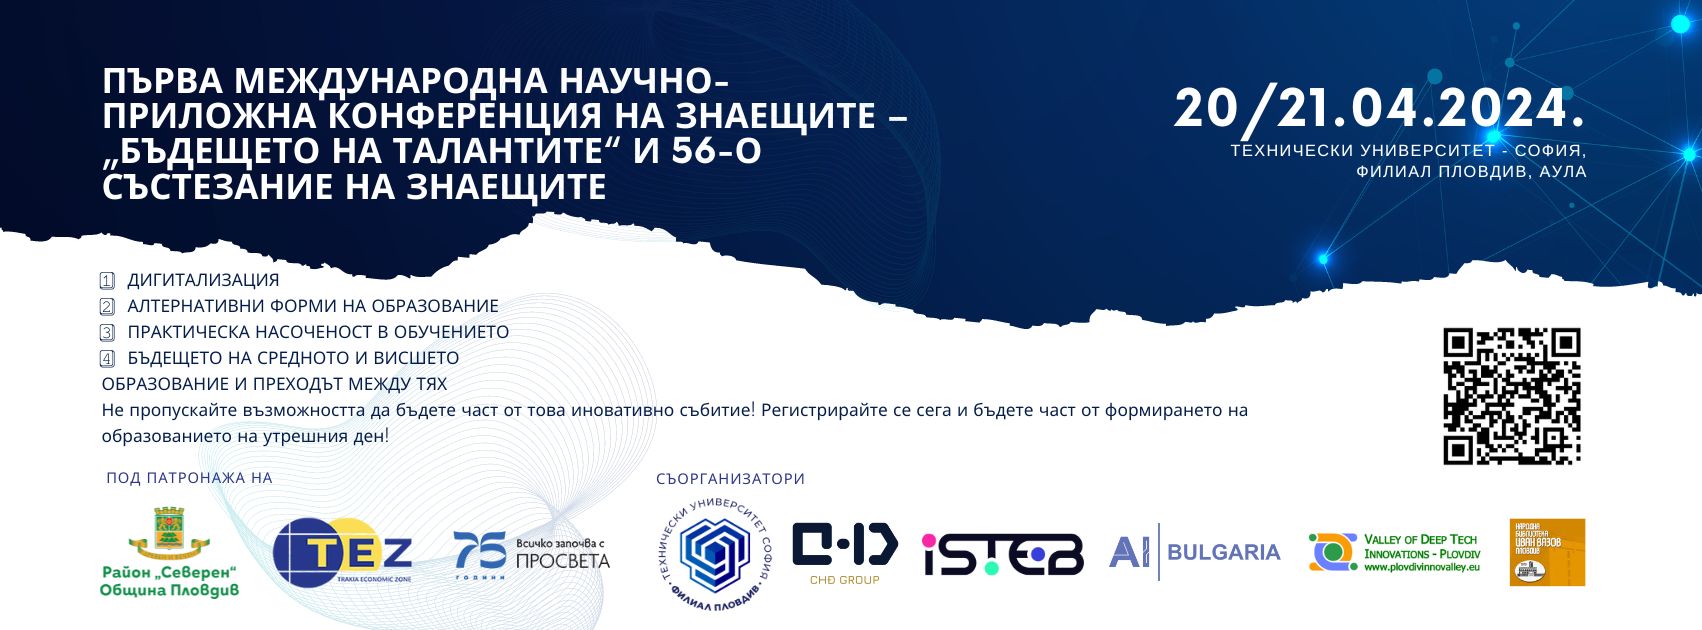 Първа международна научна конференция на знаещите "Бъдещето на талантите"